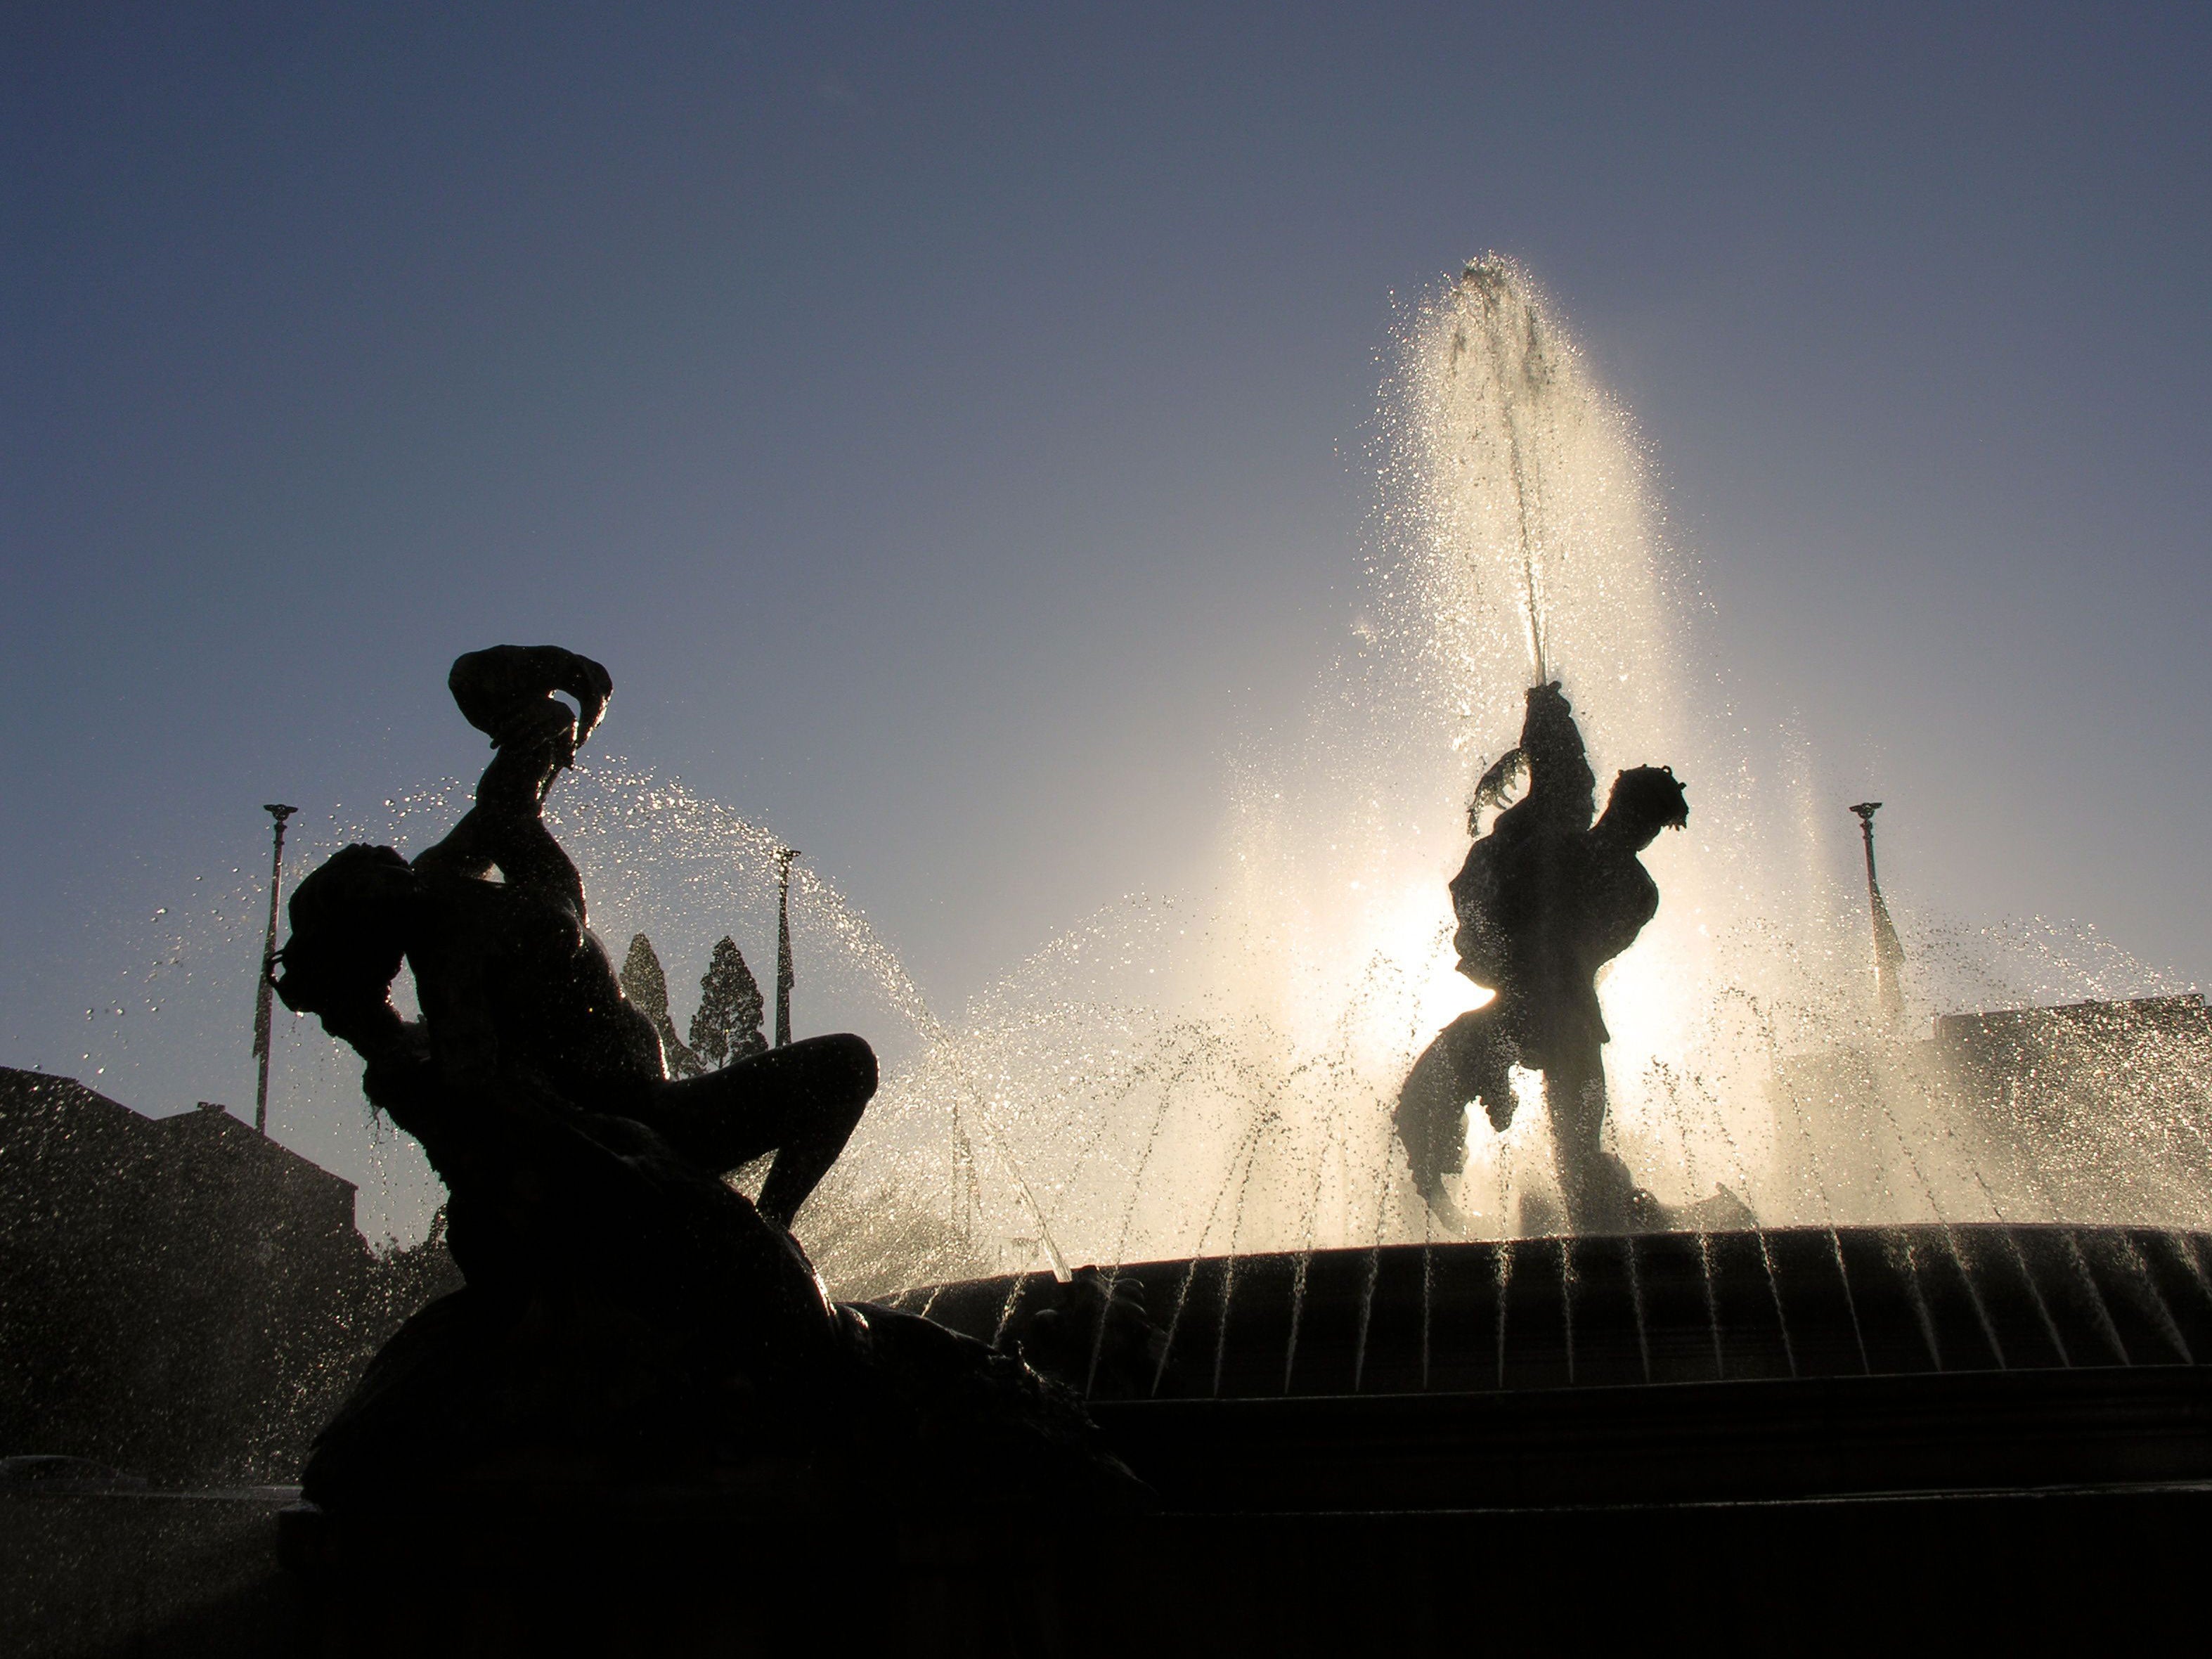 Fontana Delle Naiadi - The Fountain of the Naiads, Piazza della Repubblica, Rome, Italy.